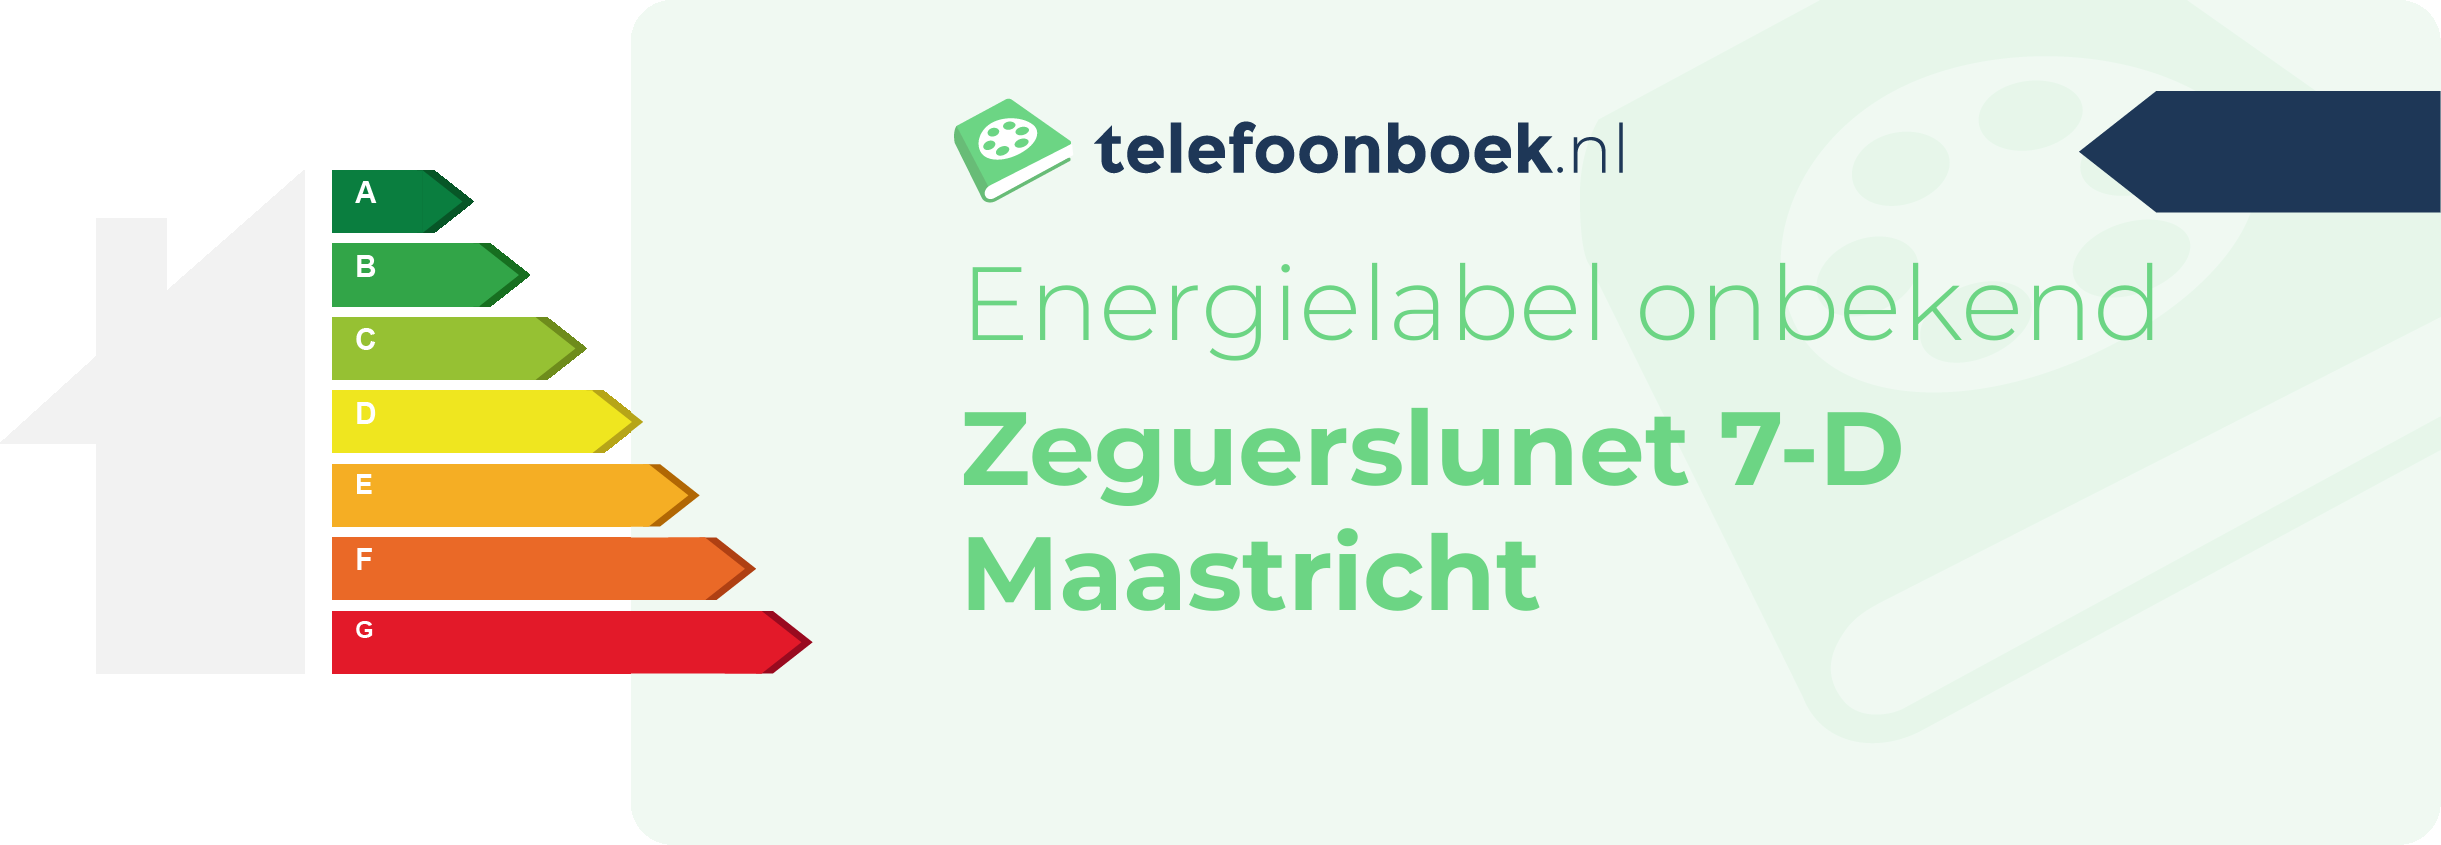 Energielabel Zeguerslunet 7-D Maastricht